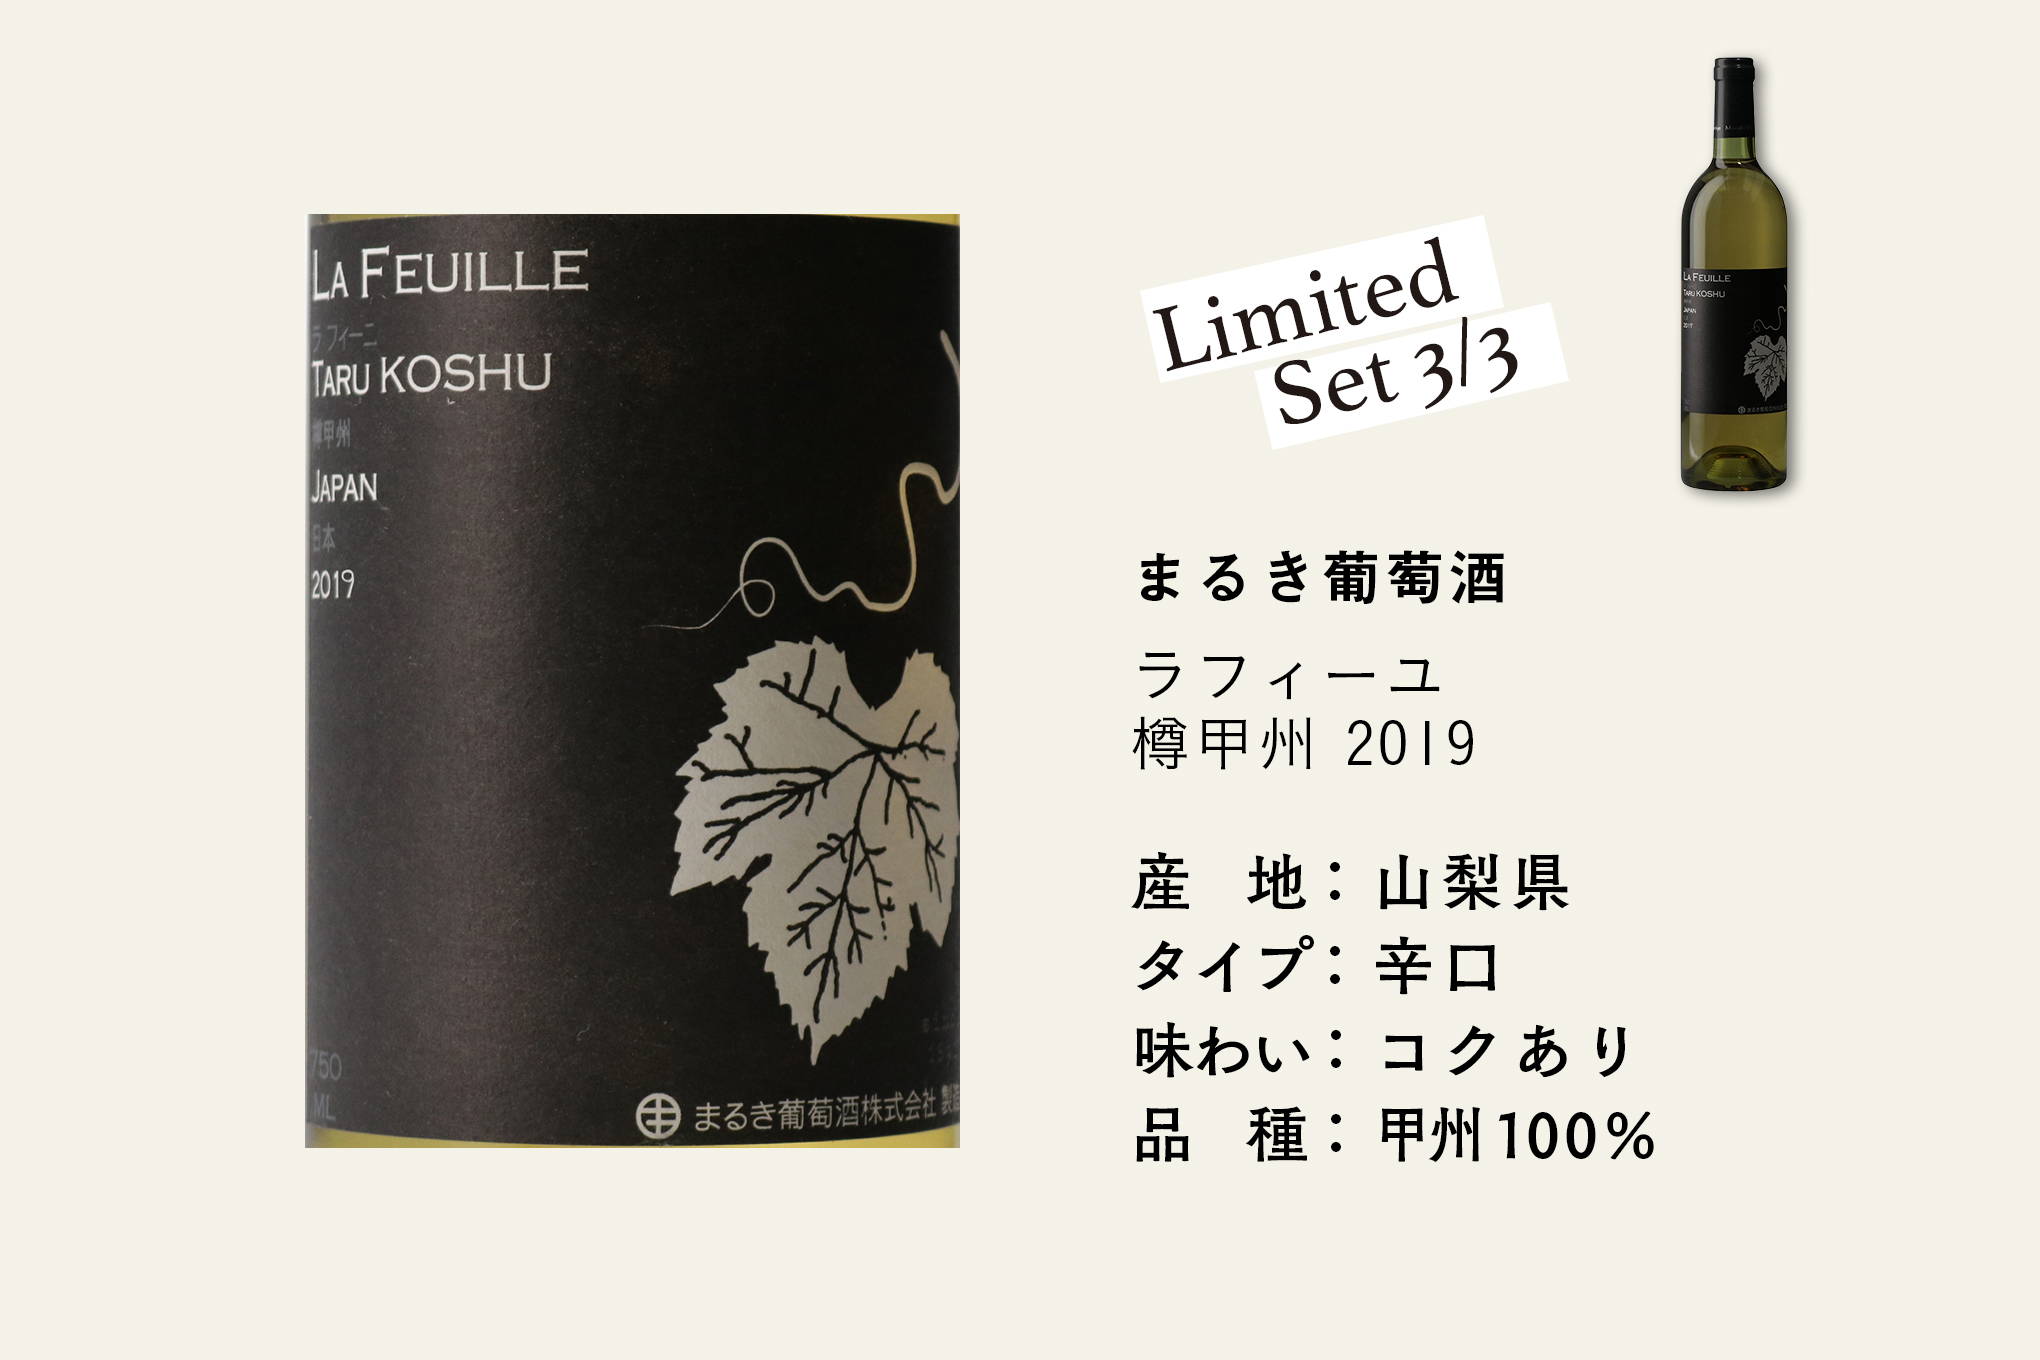 甲州ブドウを知り尽くした、現存する日本最古のワイナリー「まるき葡萄酒」。約6か月間フレンチオーク樽で熟成させた2019年ヴィンテージが到着！